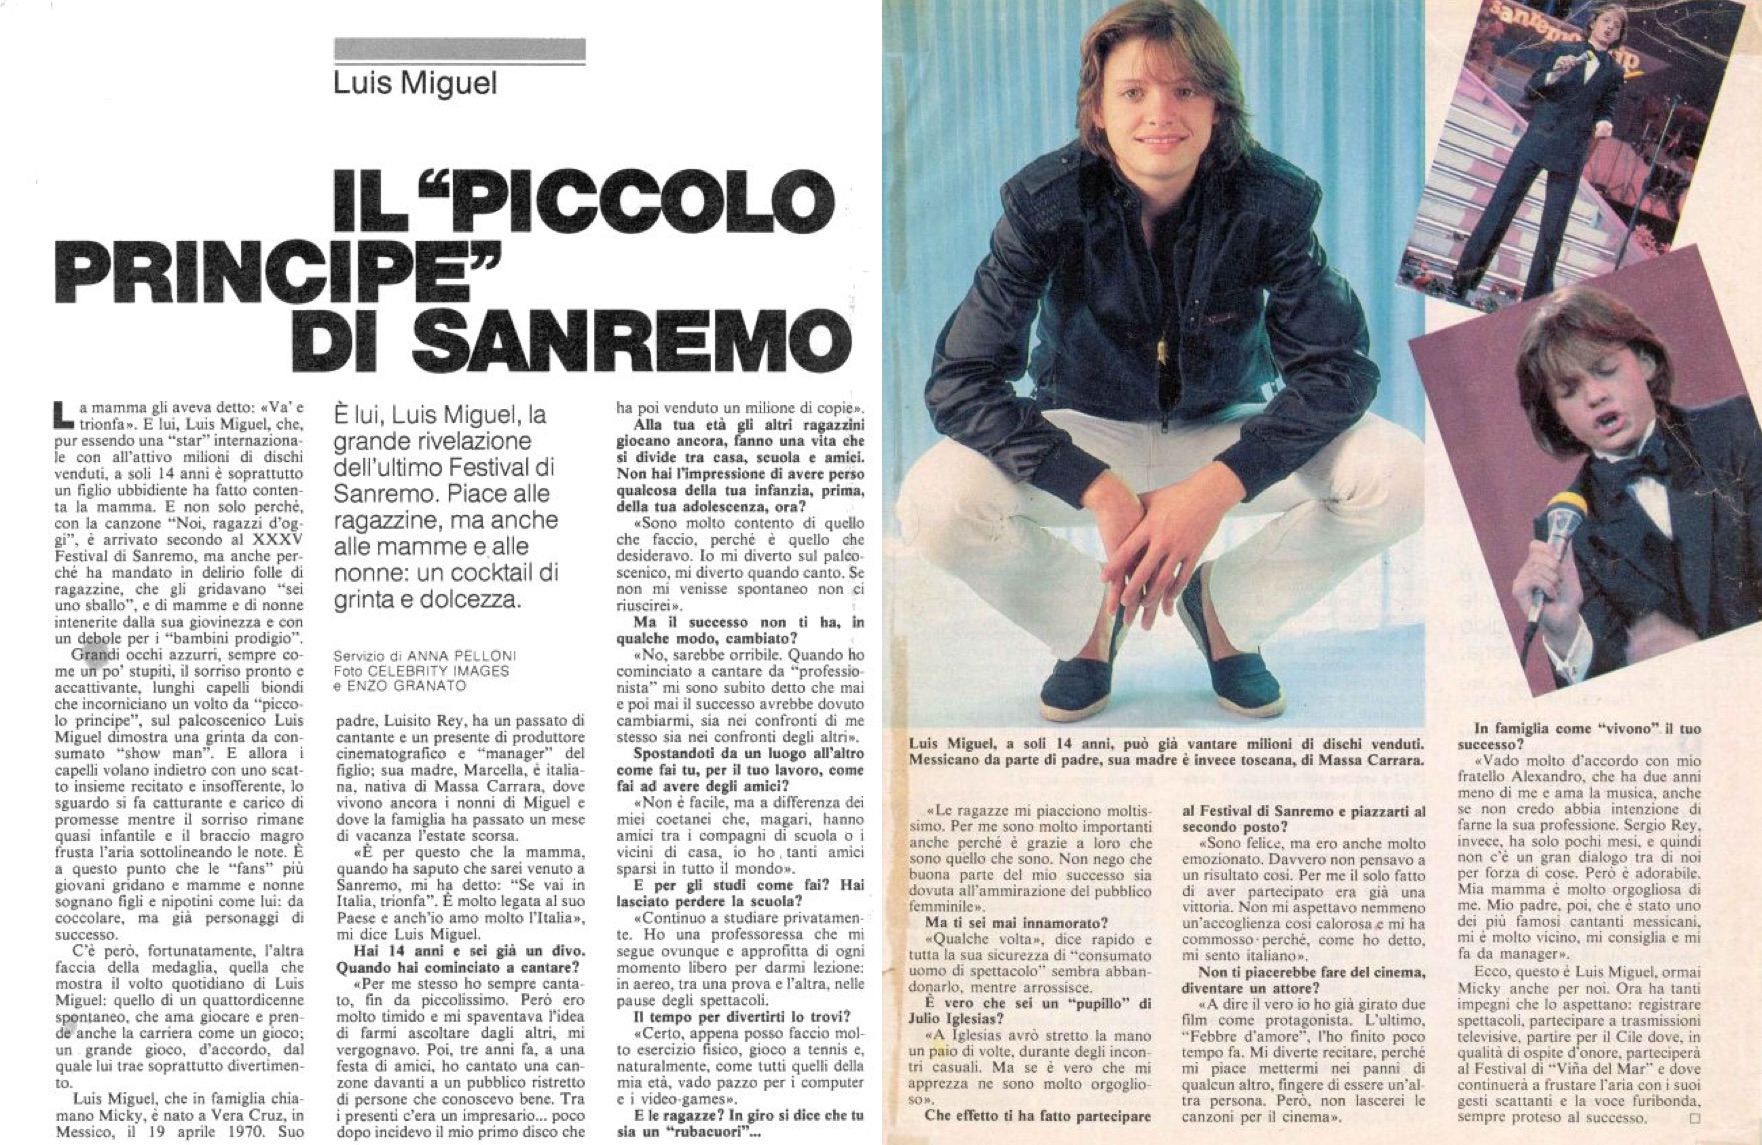 Luis Miguel en un artículo titulado "El principito de San Remo". (LuisMiguelSite.com)